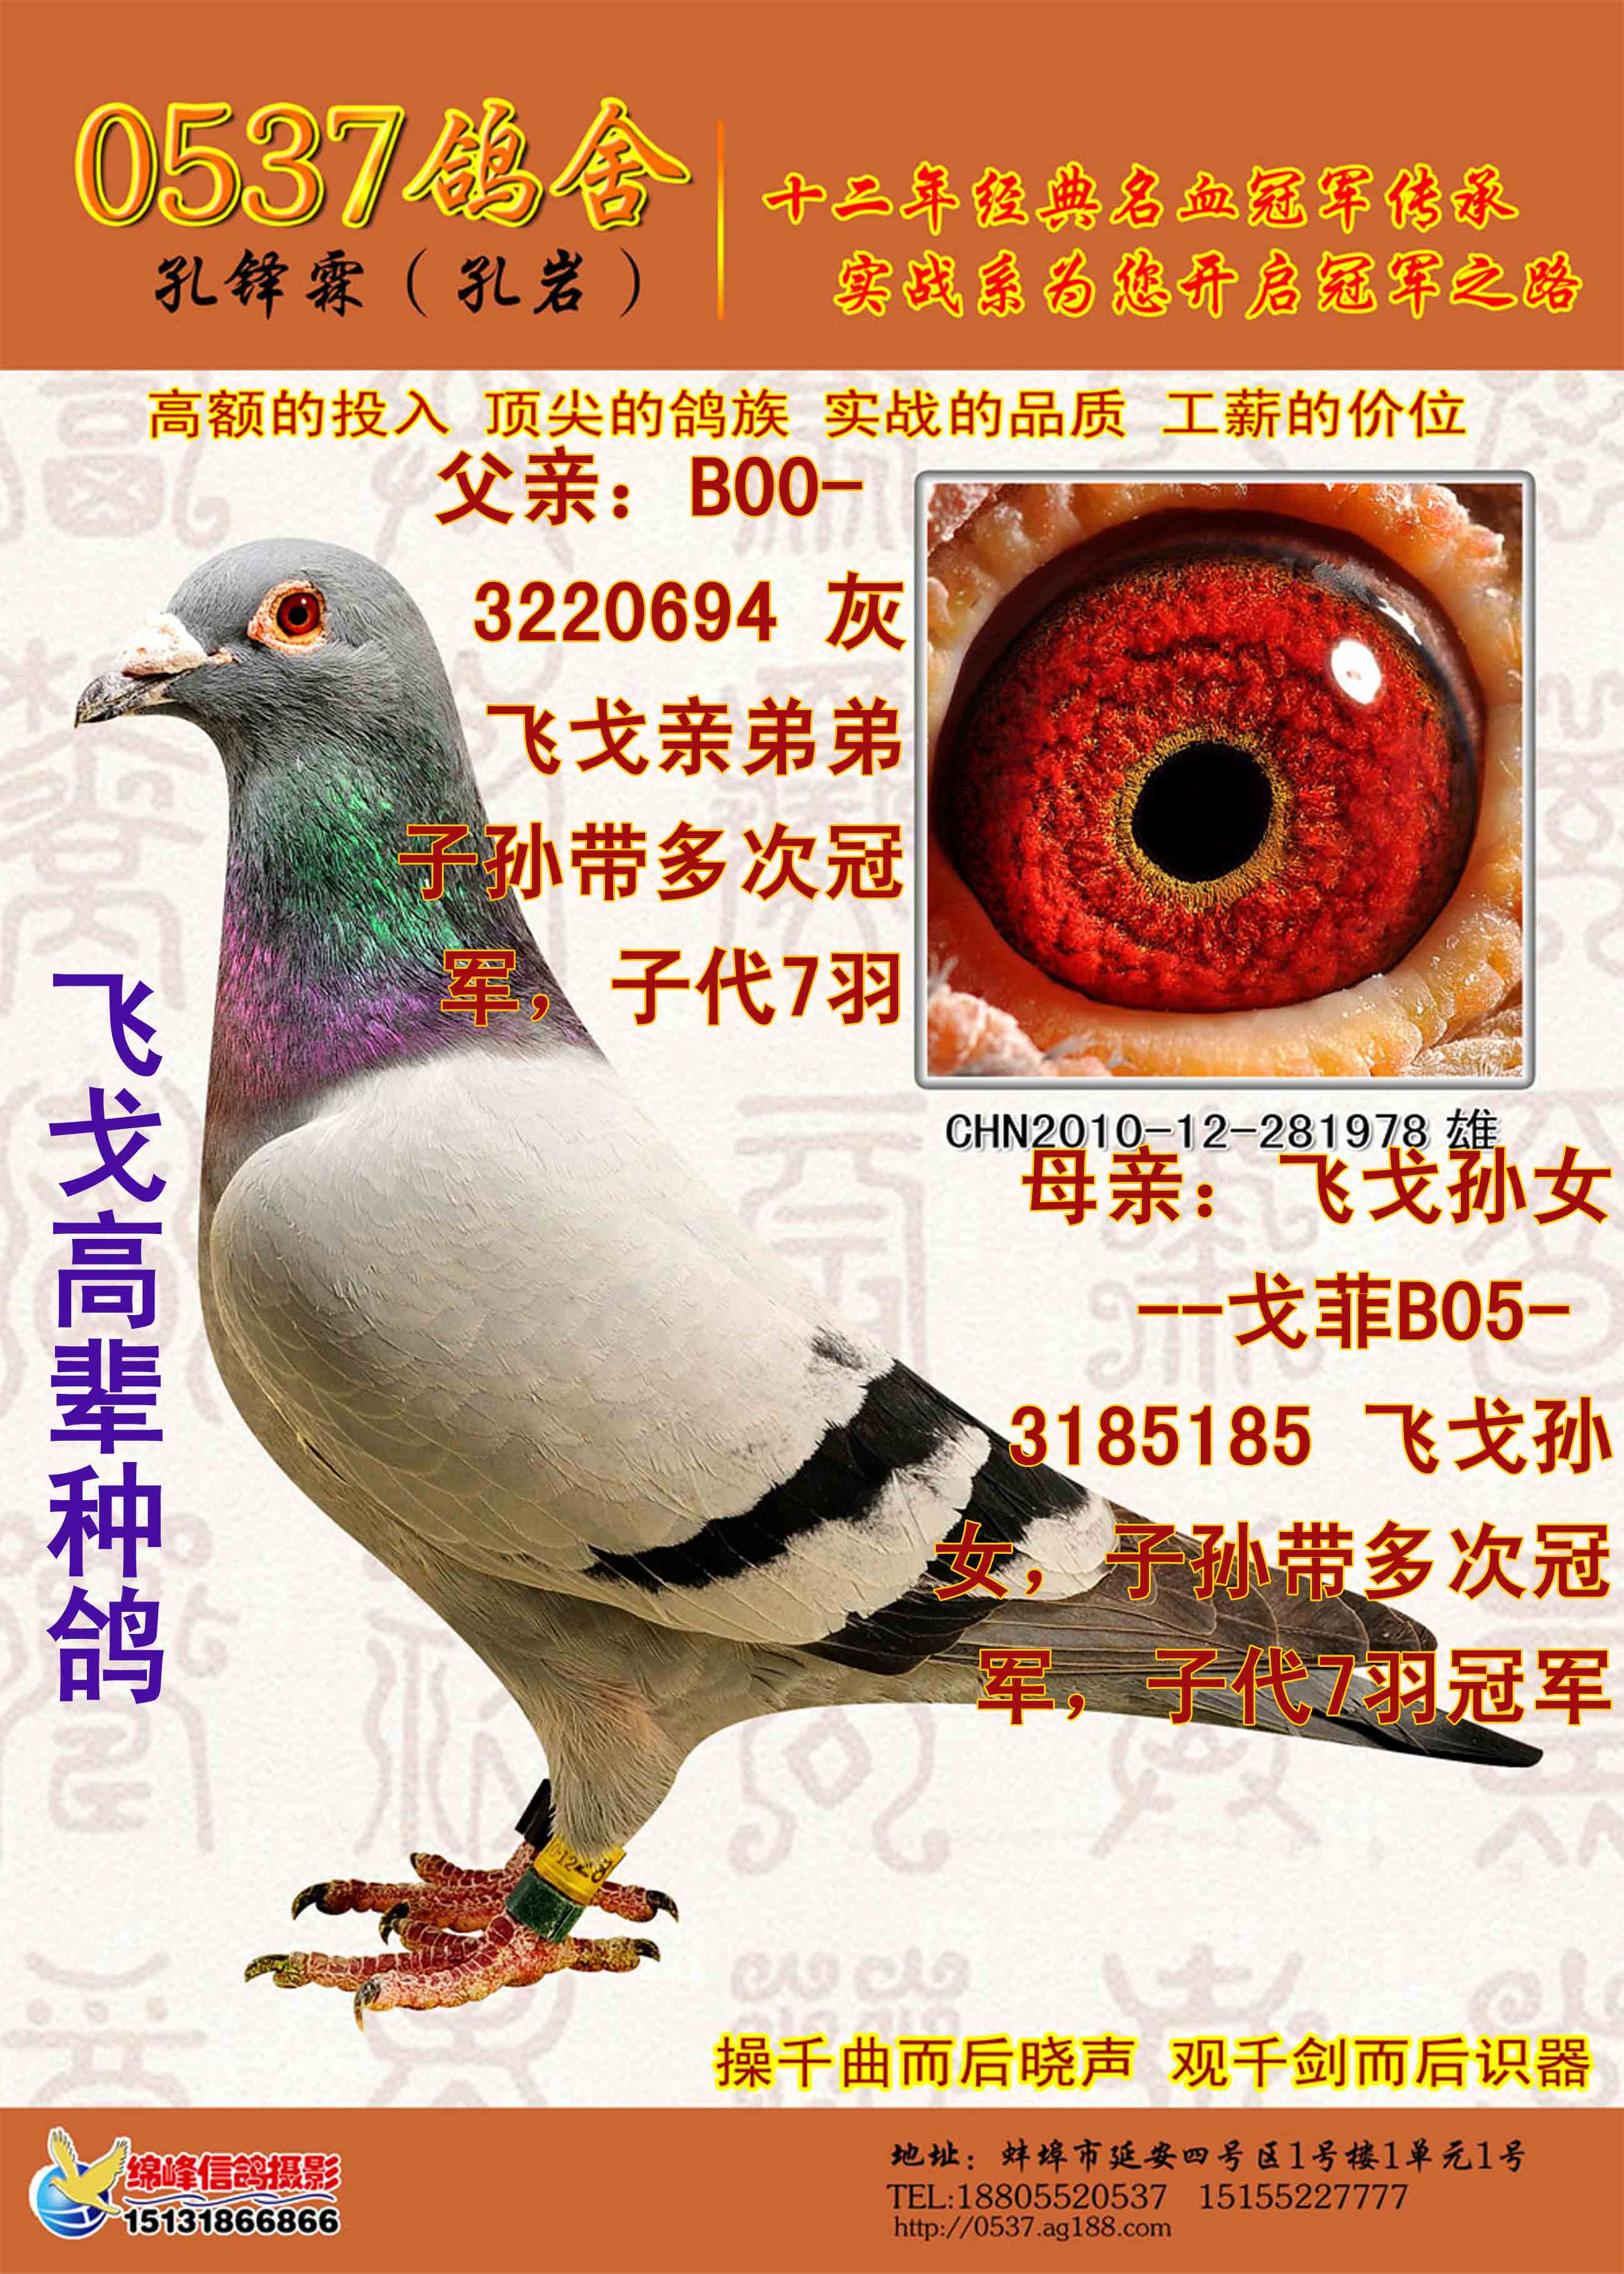 日本赛鸽超级种鸽图片,日本赛鸽名家种鸽图片 - 伤感说说吧